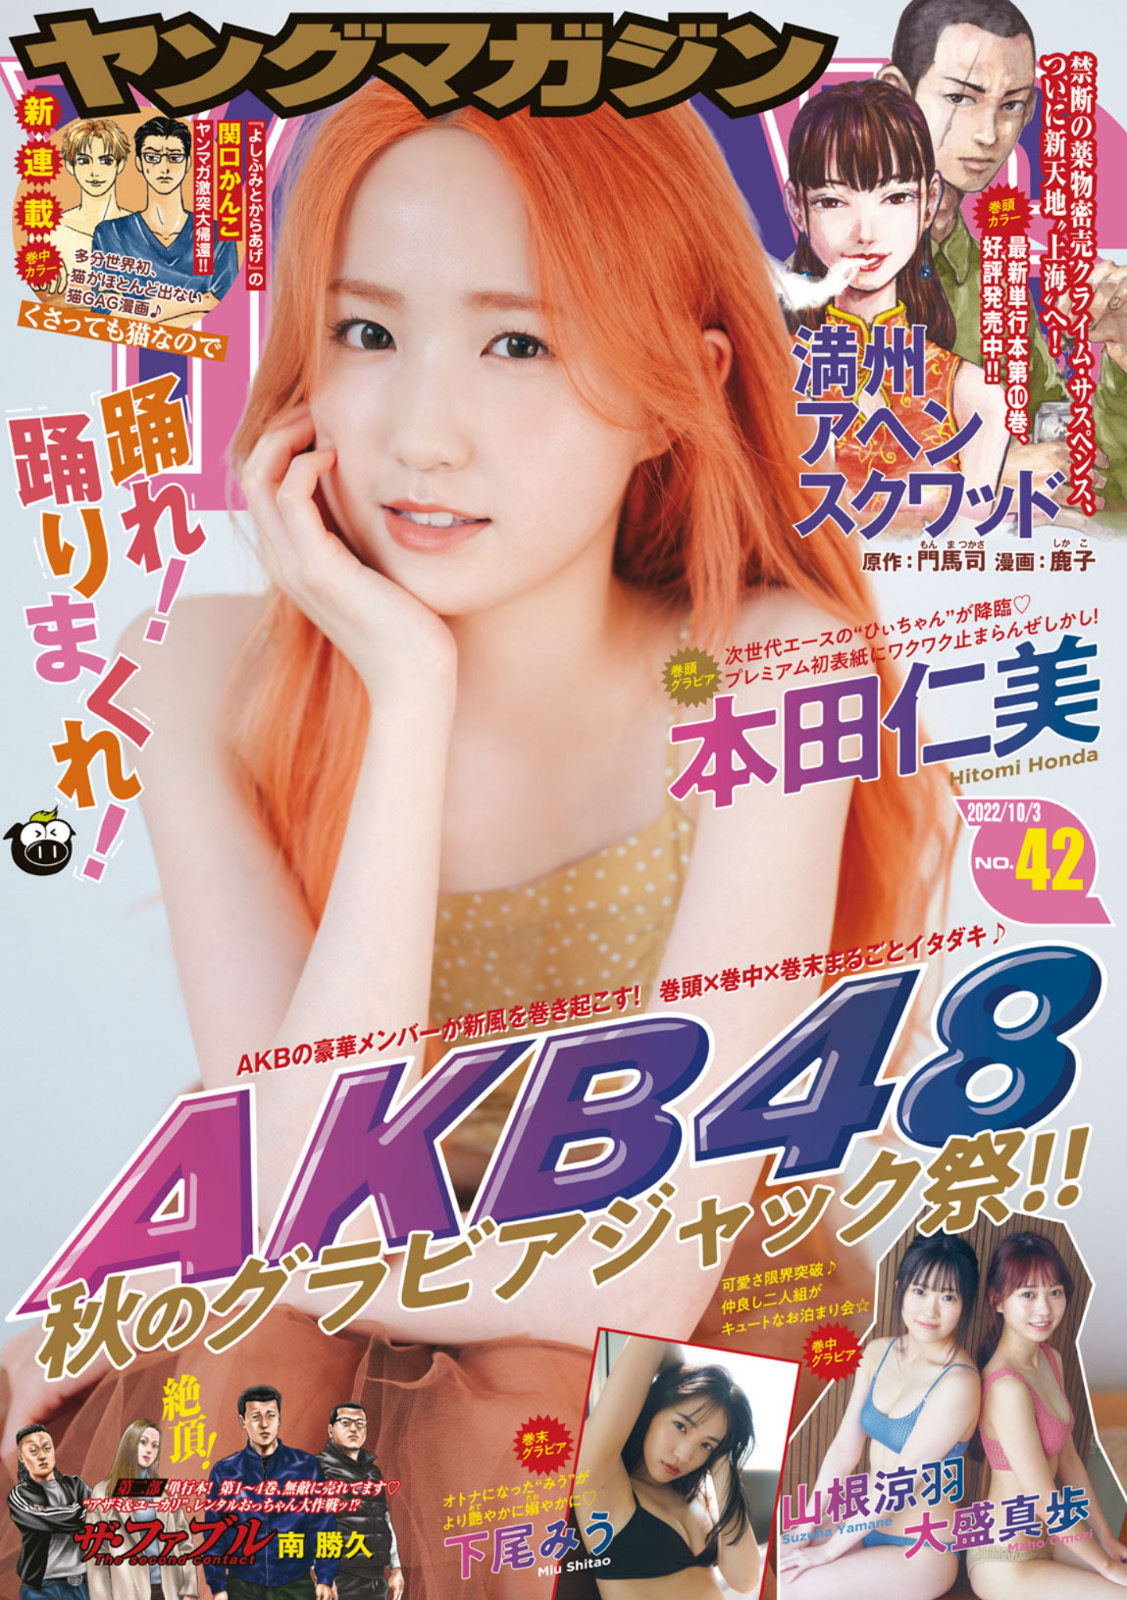 Hitomi Honda 本田仁美, Young Magazine 2022 No.42 (ヤングマガジン 2022年42号) - itotii